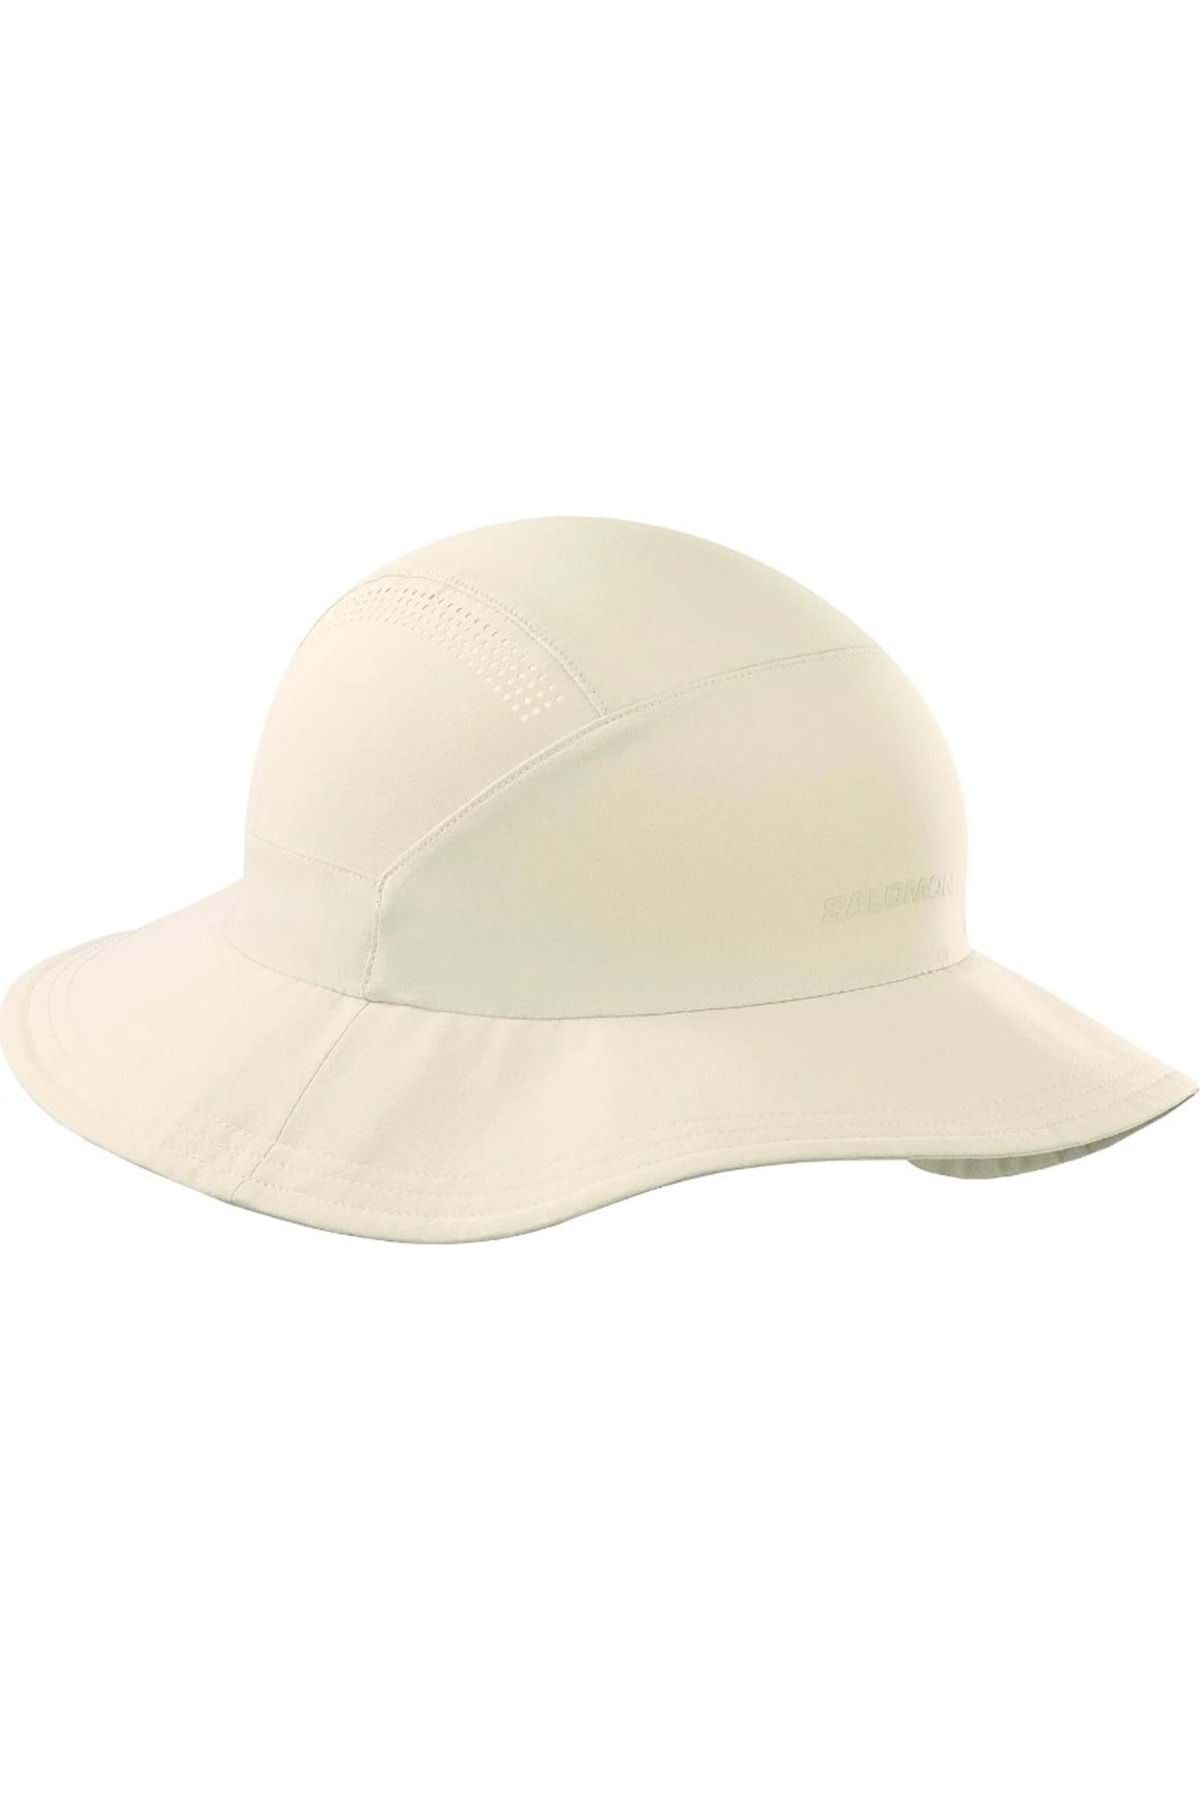 Salomon Mountain Hat Foter Unisex Şapka Bej